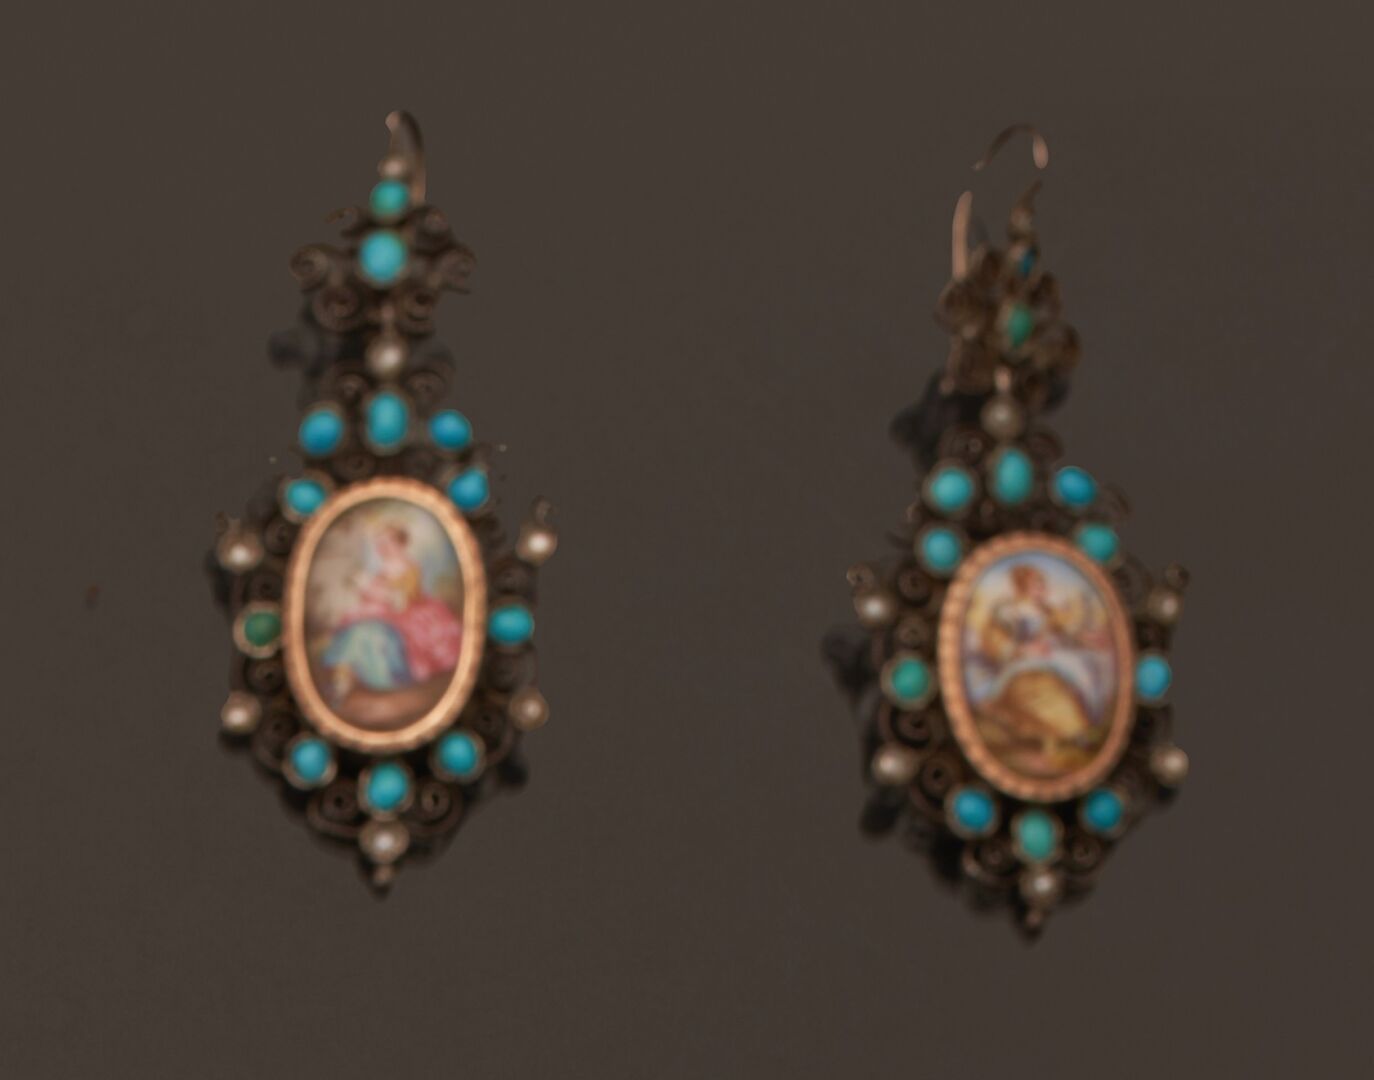 Null 一对镶有多色瓷片的银丝耳环，瓷片描绘的是风景中的年轻女子，周围有半颗珍珠和凸圆形绿松石。
19世纪
(意外事件)
毛重：9克